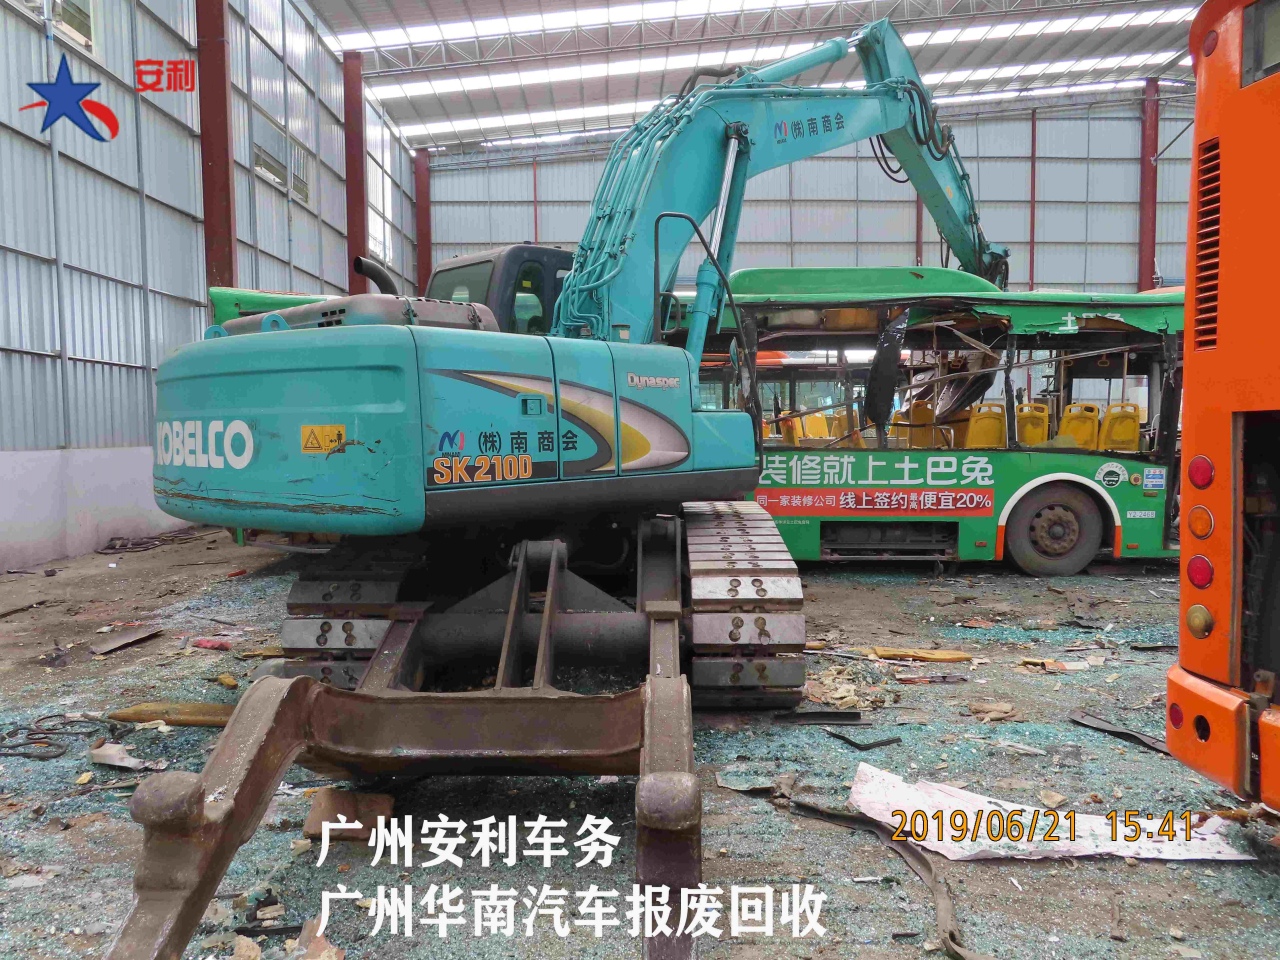 广州汽车报废回收公司205.jpg